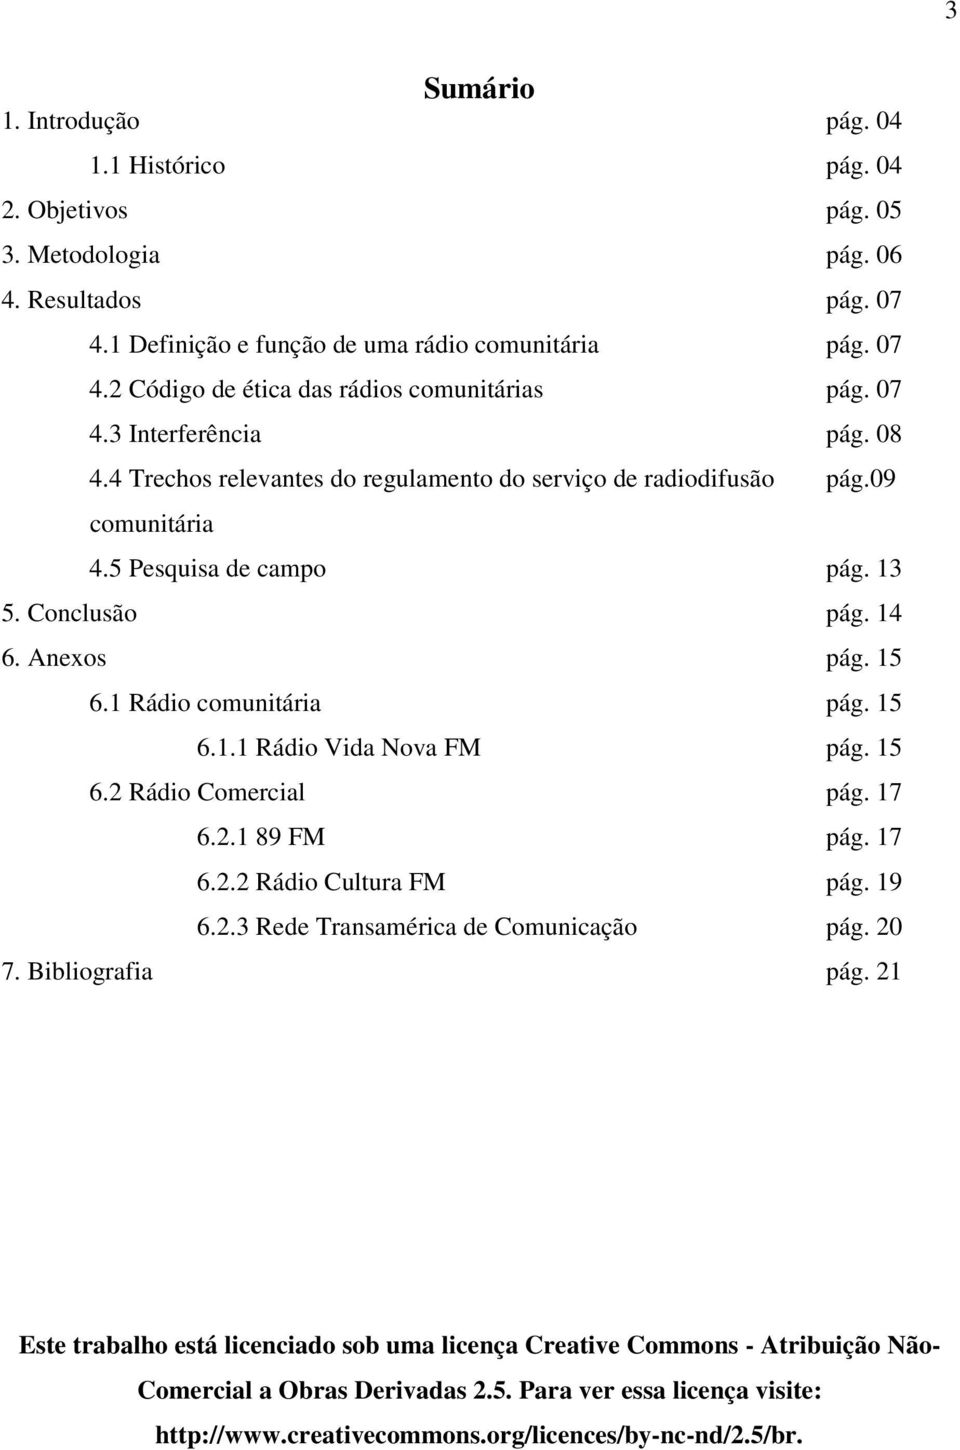 1 Rádio comunitária pág. 15 6.1.1 Rádio Vida Nova FM pág. 15 6.2 Rádio Comercial pág. 17 6.2.1 89 FM pág. 17 6.2.2 Rádio Cultura FM pág. 19 6.2.3 Rede Transamérica de Comunicação pág. 20 7.